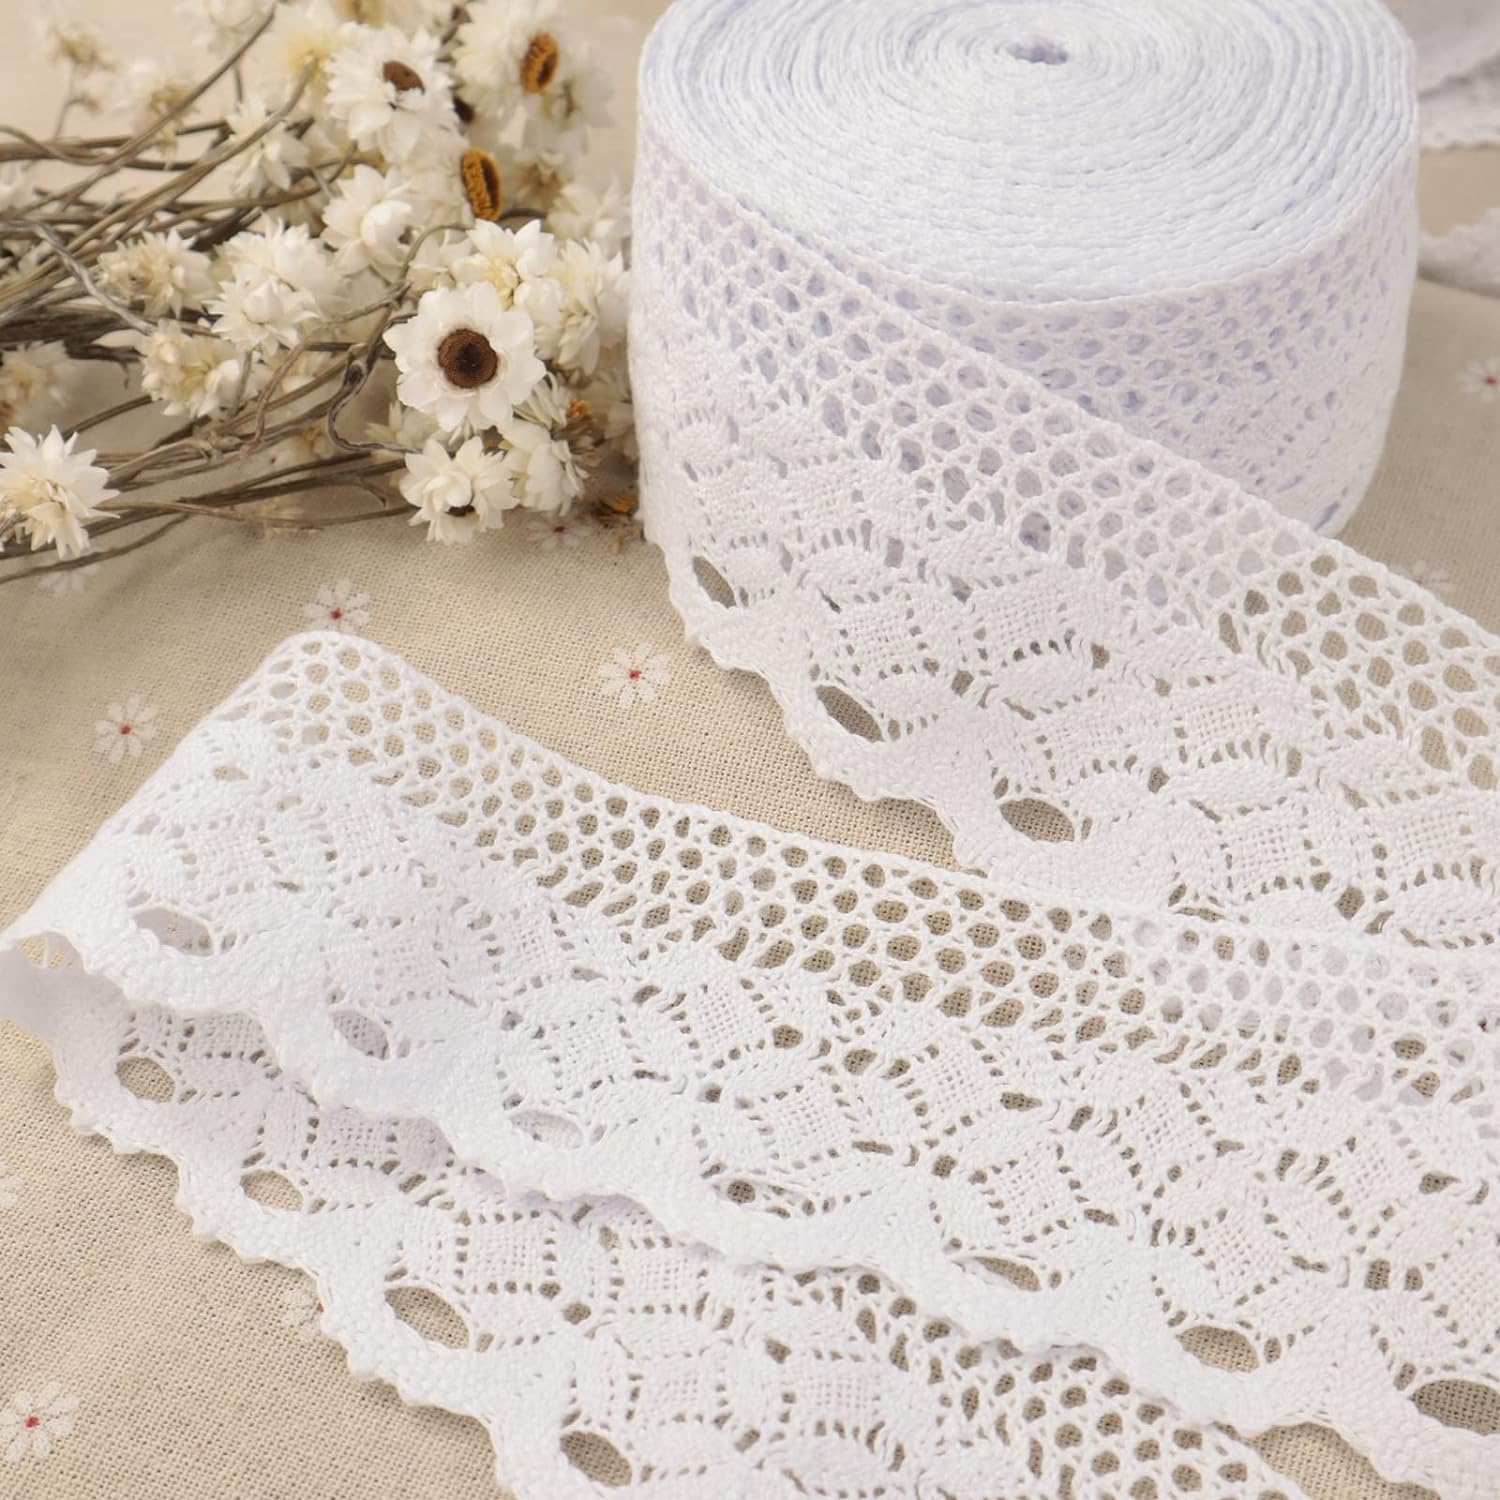 LEMO – garniture en dentelle de coton blanche, dentelle à coudre au Crochet pour l'artisanat, emballage de cadeaux, décoration de mariage nuptial